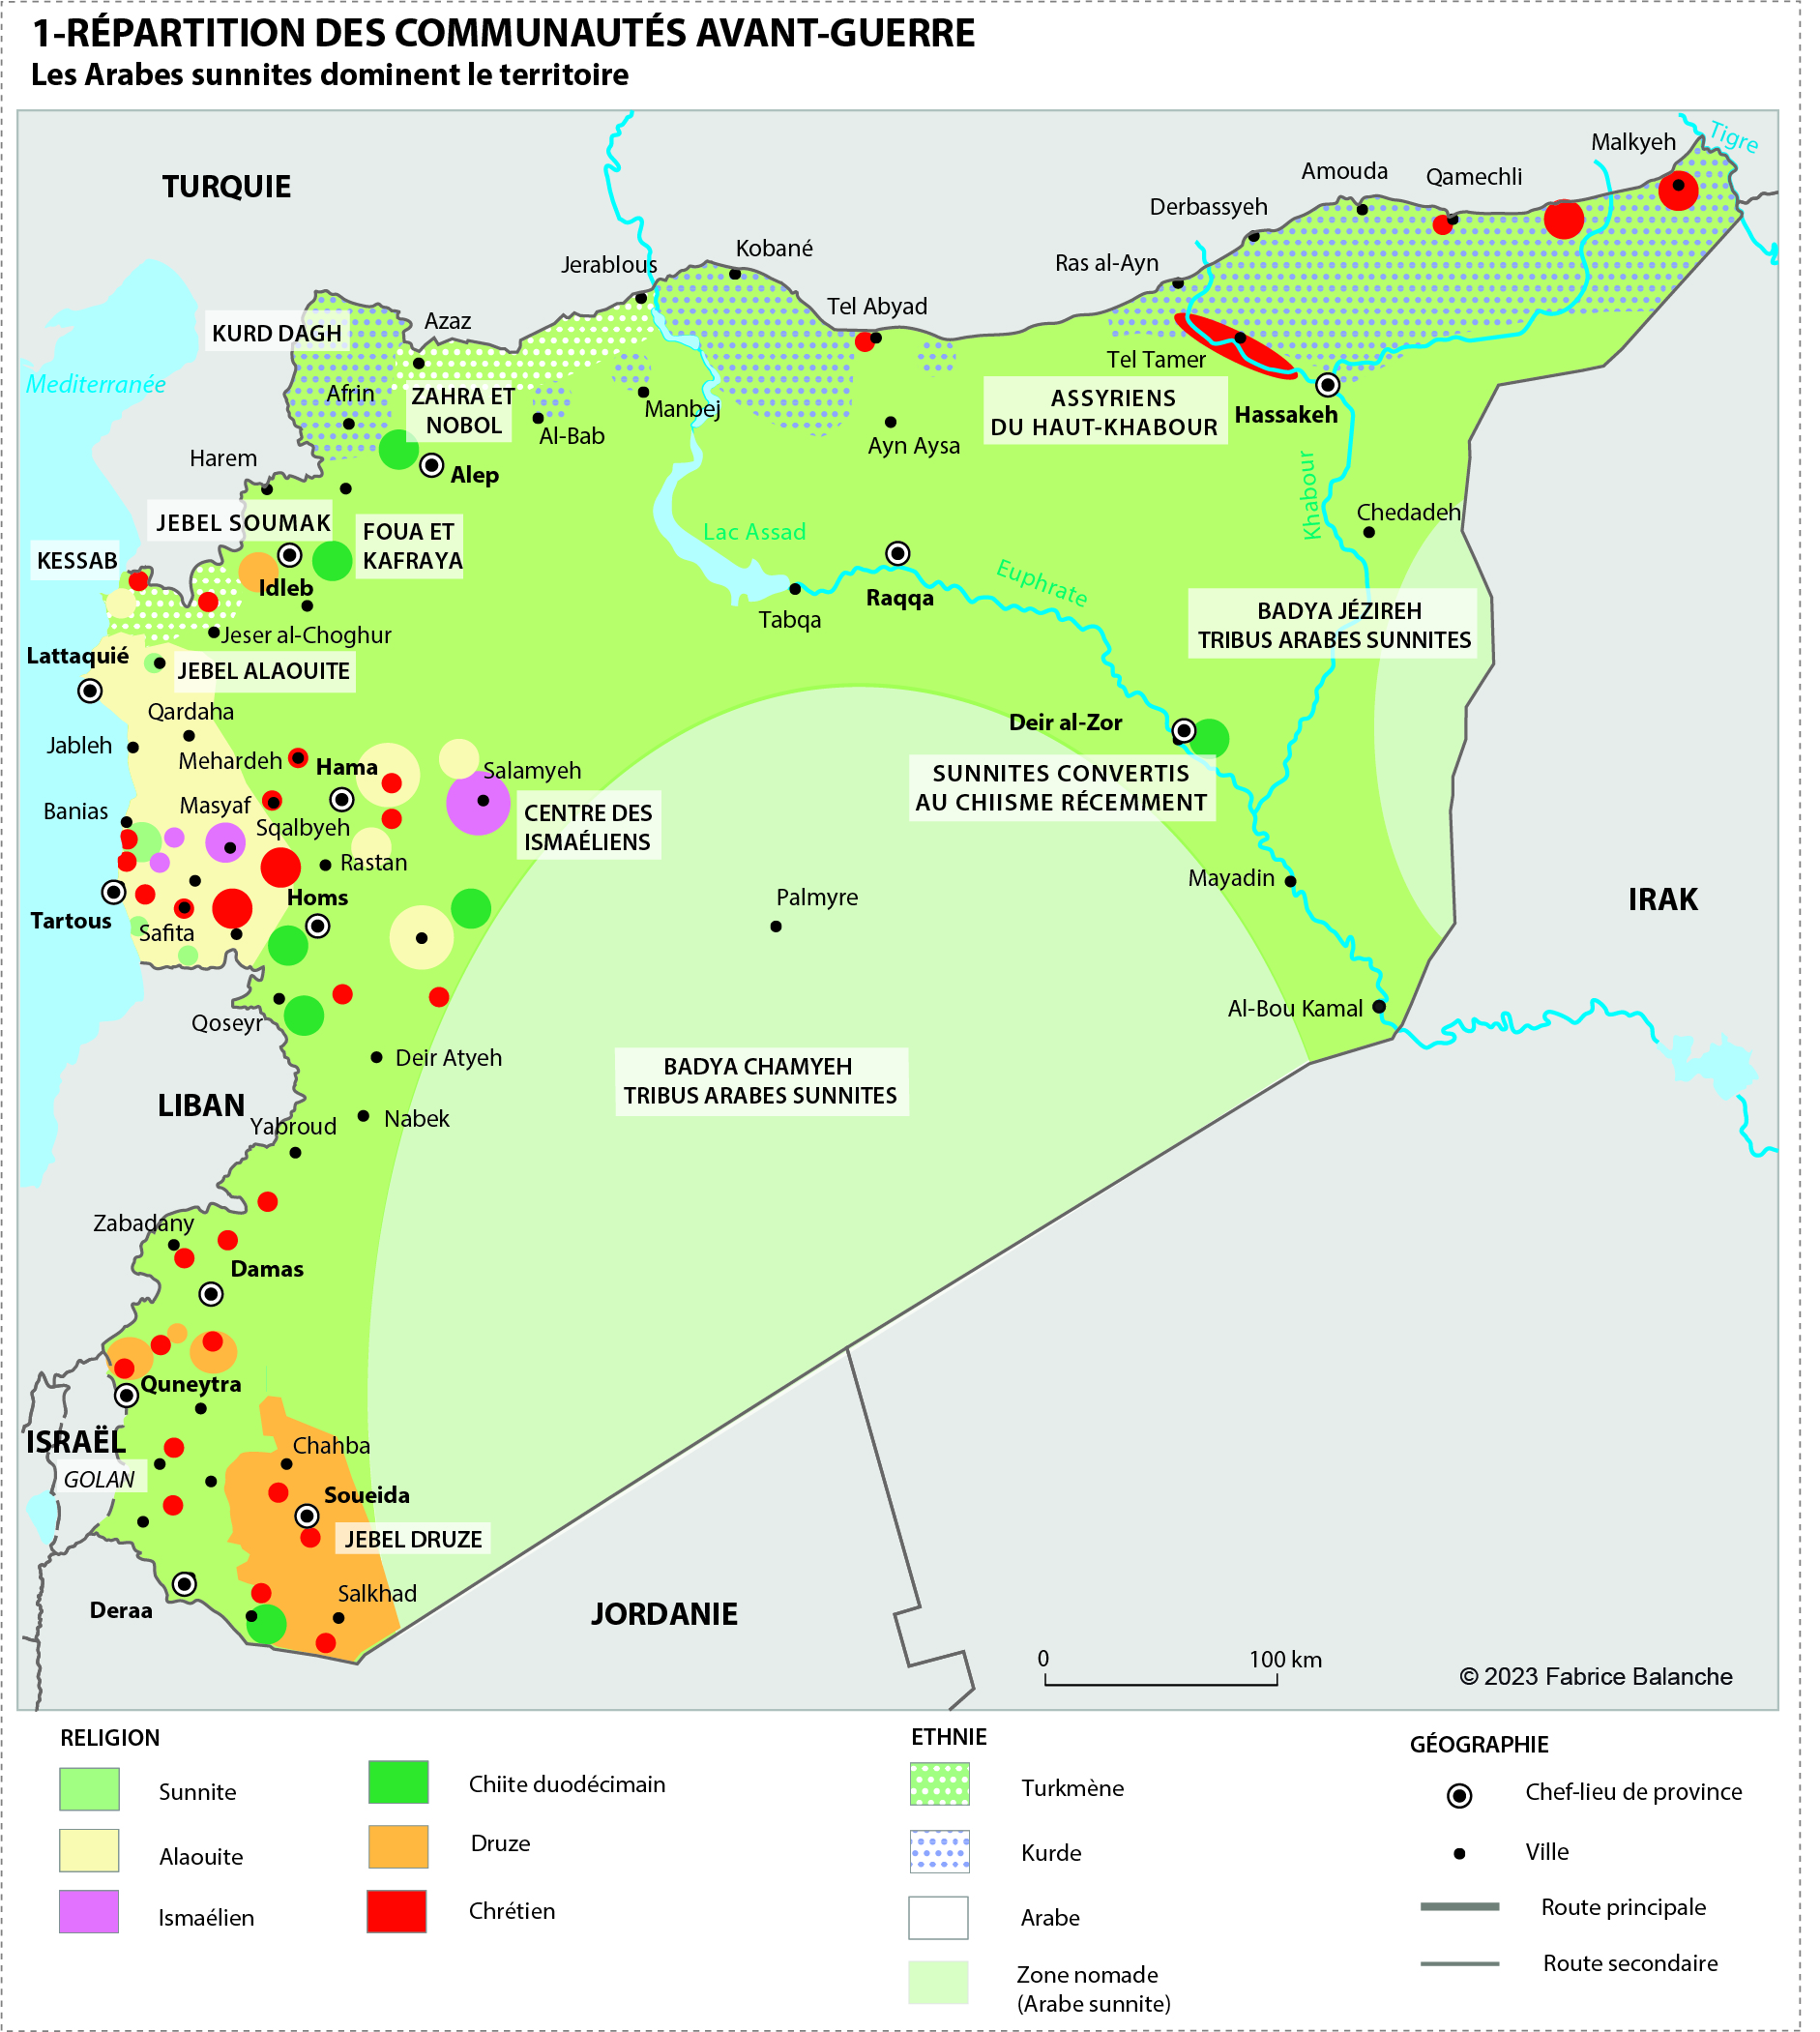 La répartition des communautés en Syrie avant guerre- Carte Fabrice Balanche